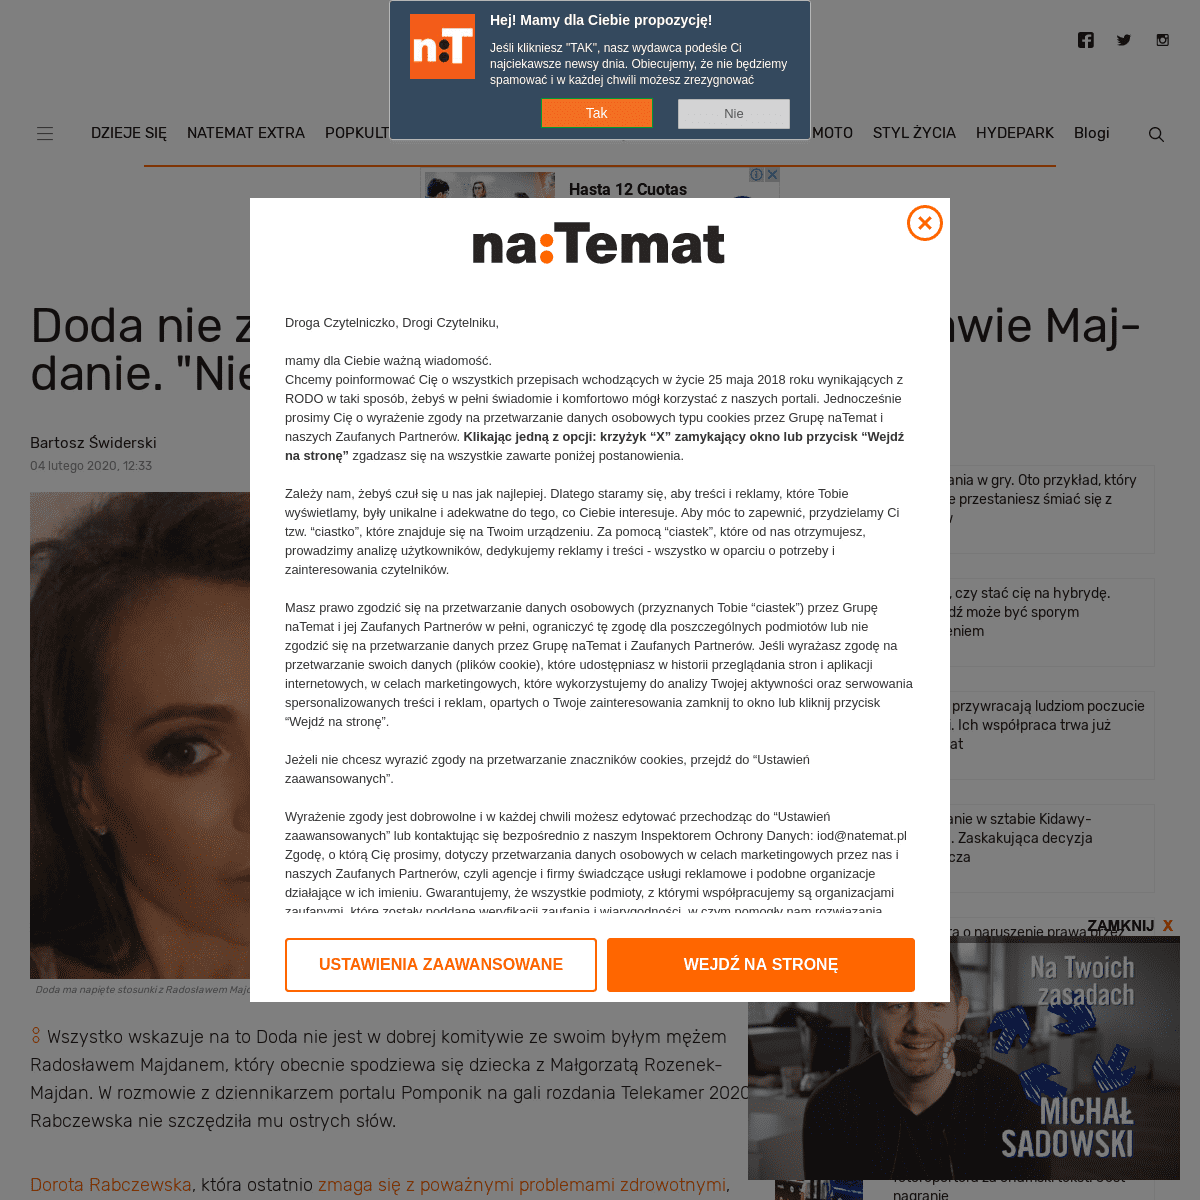 A complete backup of natemat.pl/298491